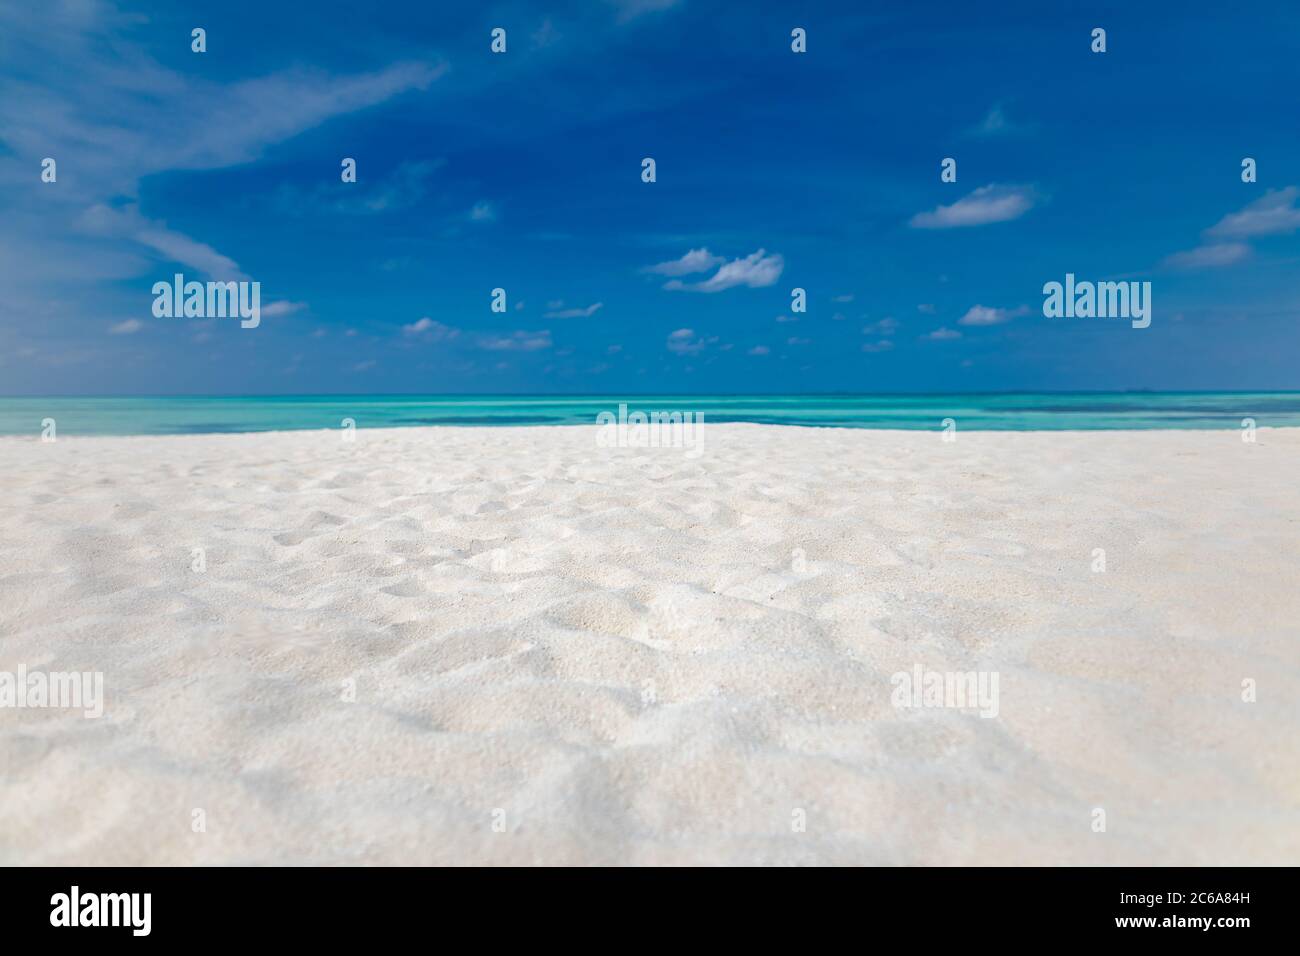 Minimale Aussicht auf den Strand, Meer Sand Himmel als entspannende Sommerlandschaft. Friedlicher tropischer Blick auf die Strandlandschaft. Wolken am blauen Himmel, ruhiges Strandkonzept Stockfoto